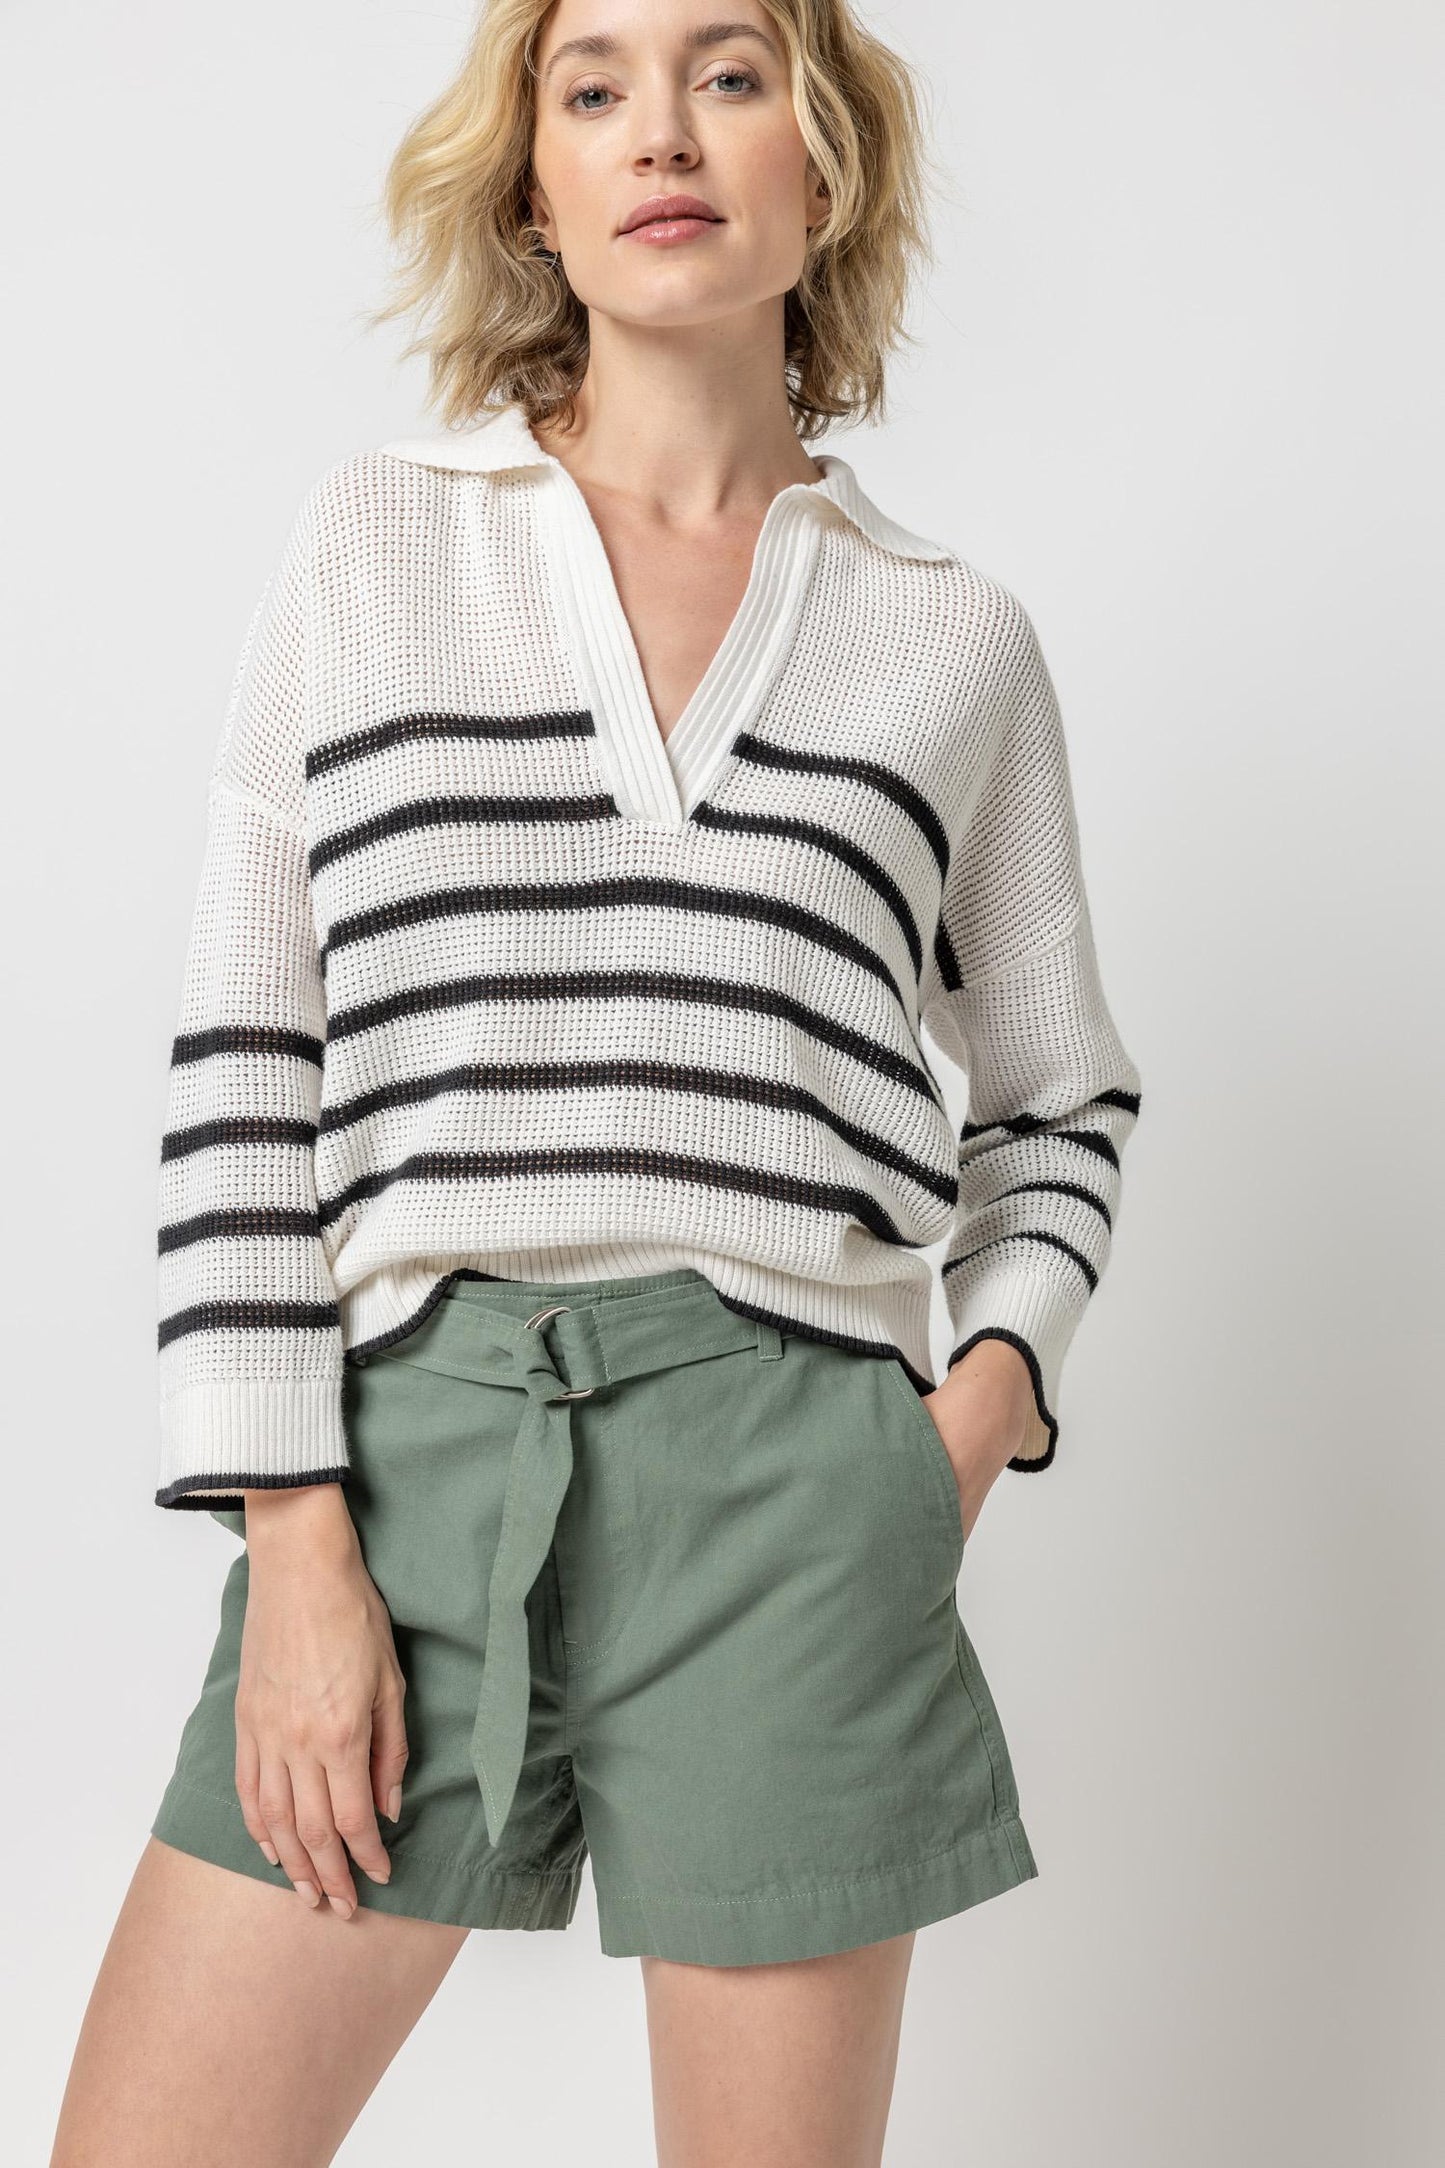 
                  
                    Lilla P | Textured Stripe Polo Sweater |  PA2480
                  
                